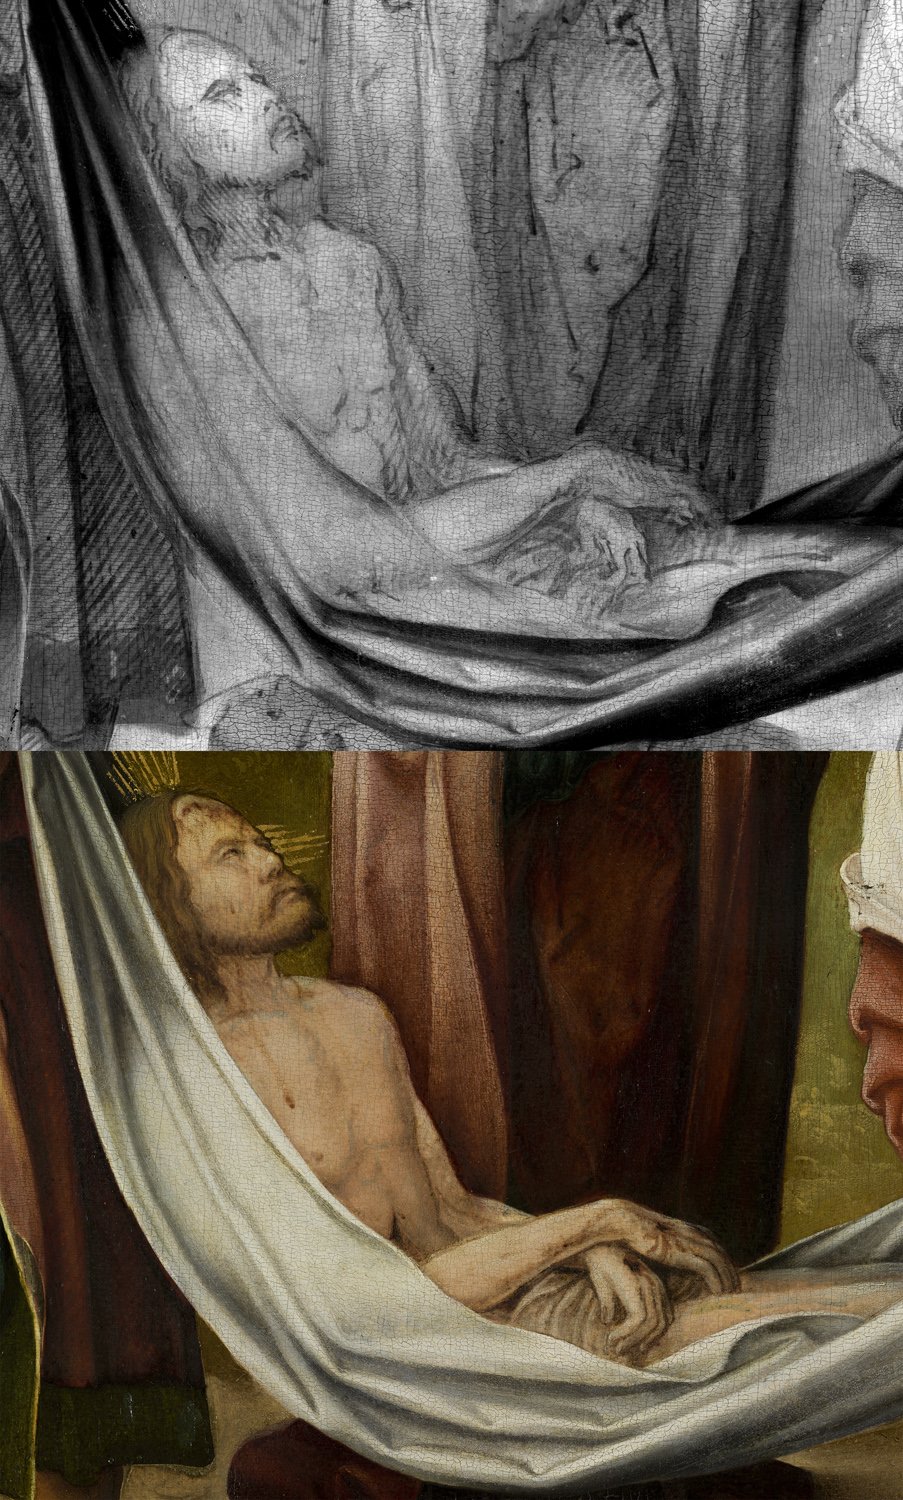 Detalle comparativo de reflectografía infrarroja e imagen visible de la obra de Burgkmair "El Santo entierro"